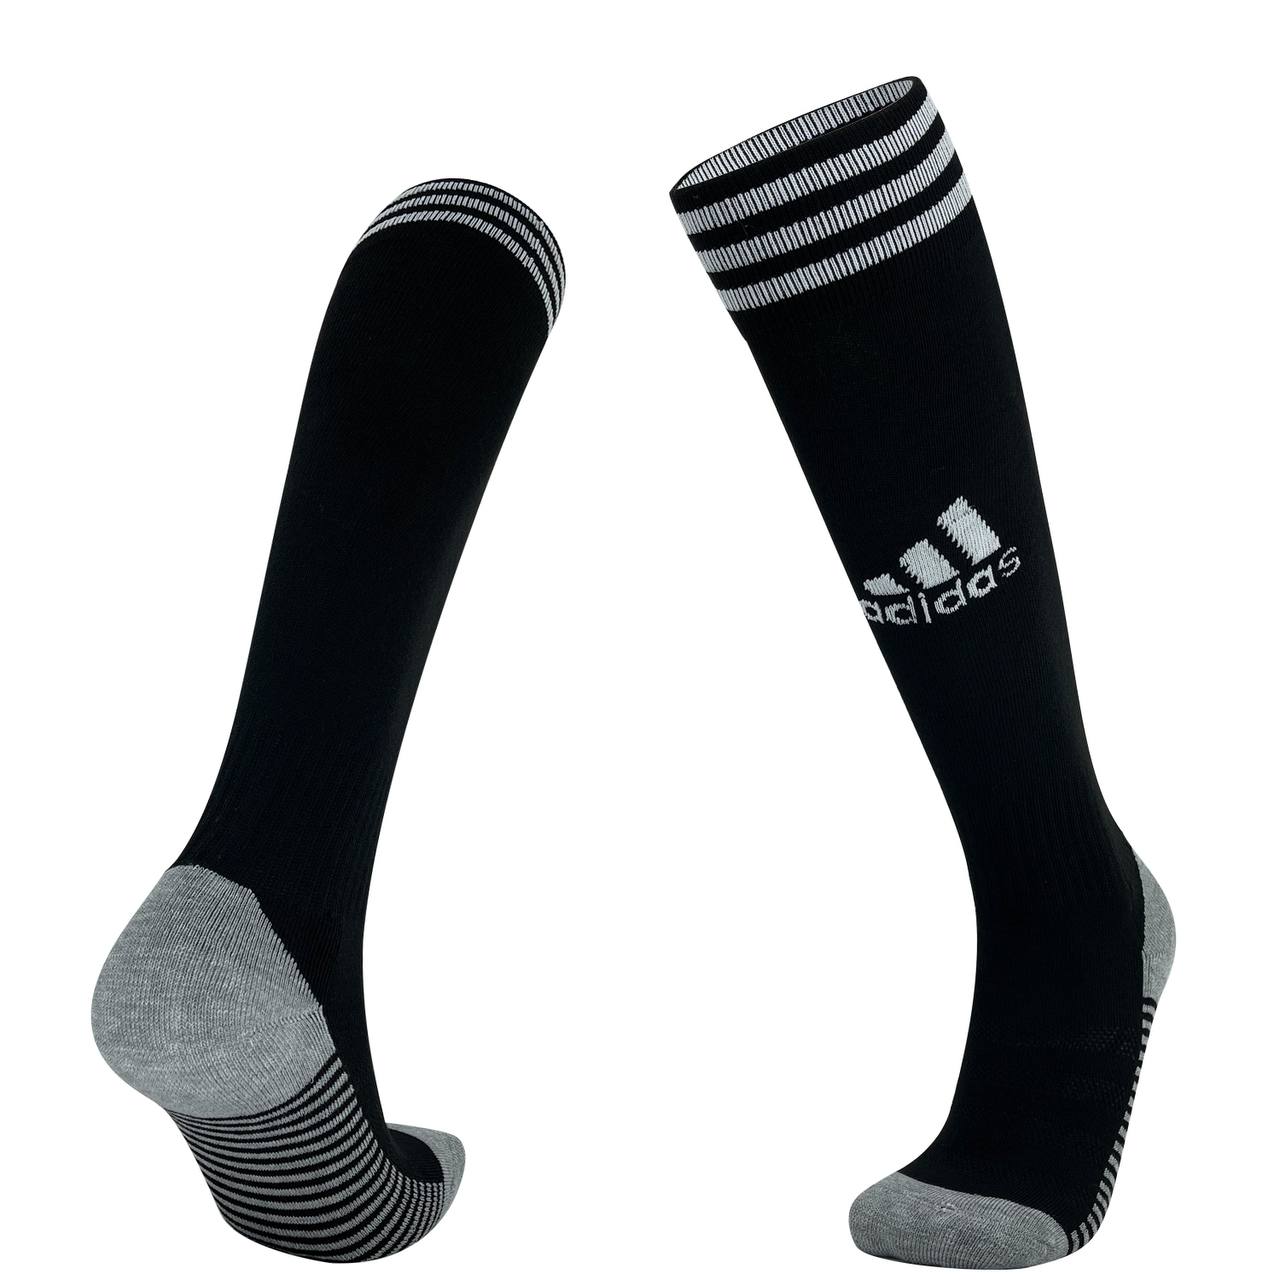 Adidas Black Knee High Football Socks